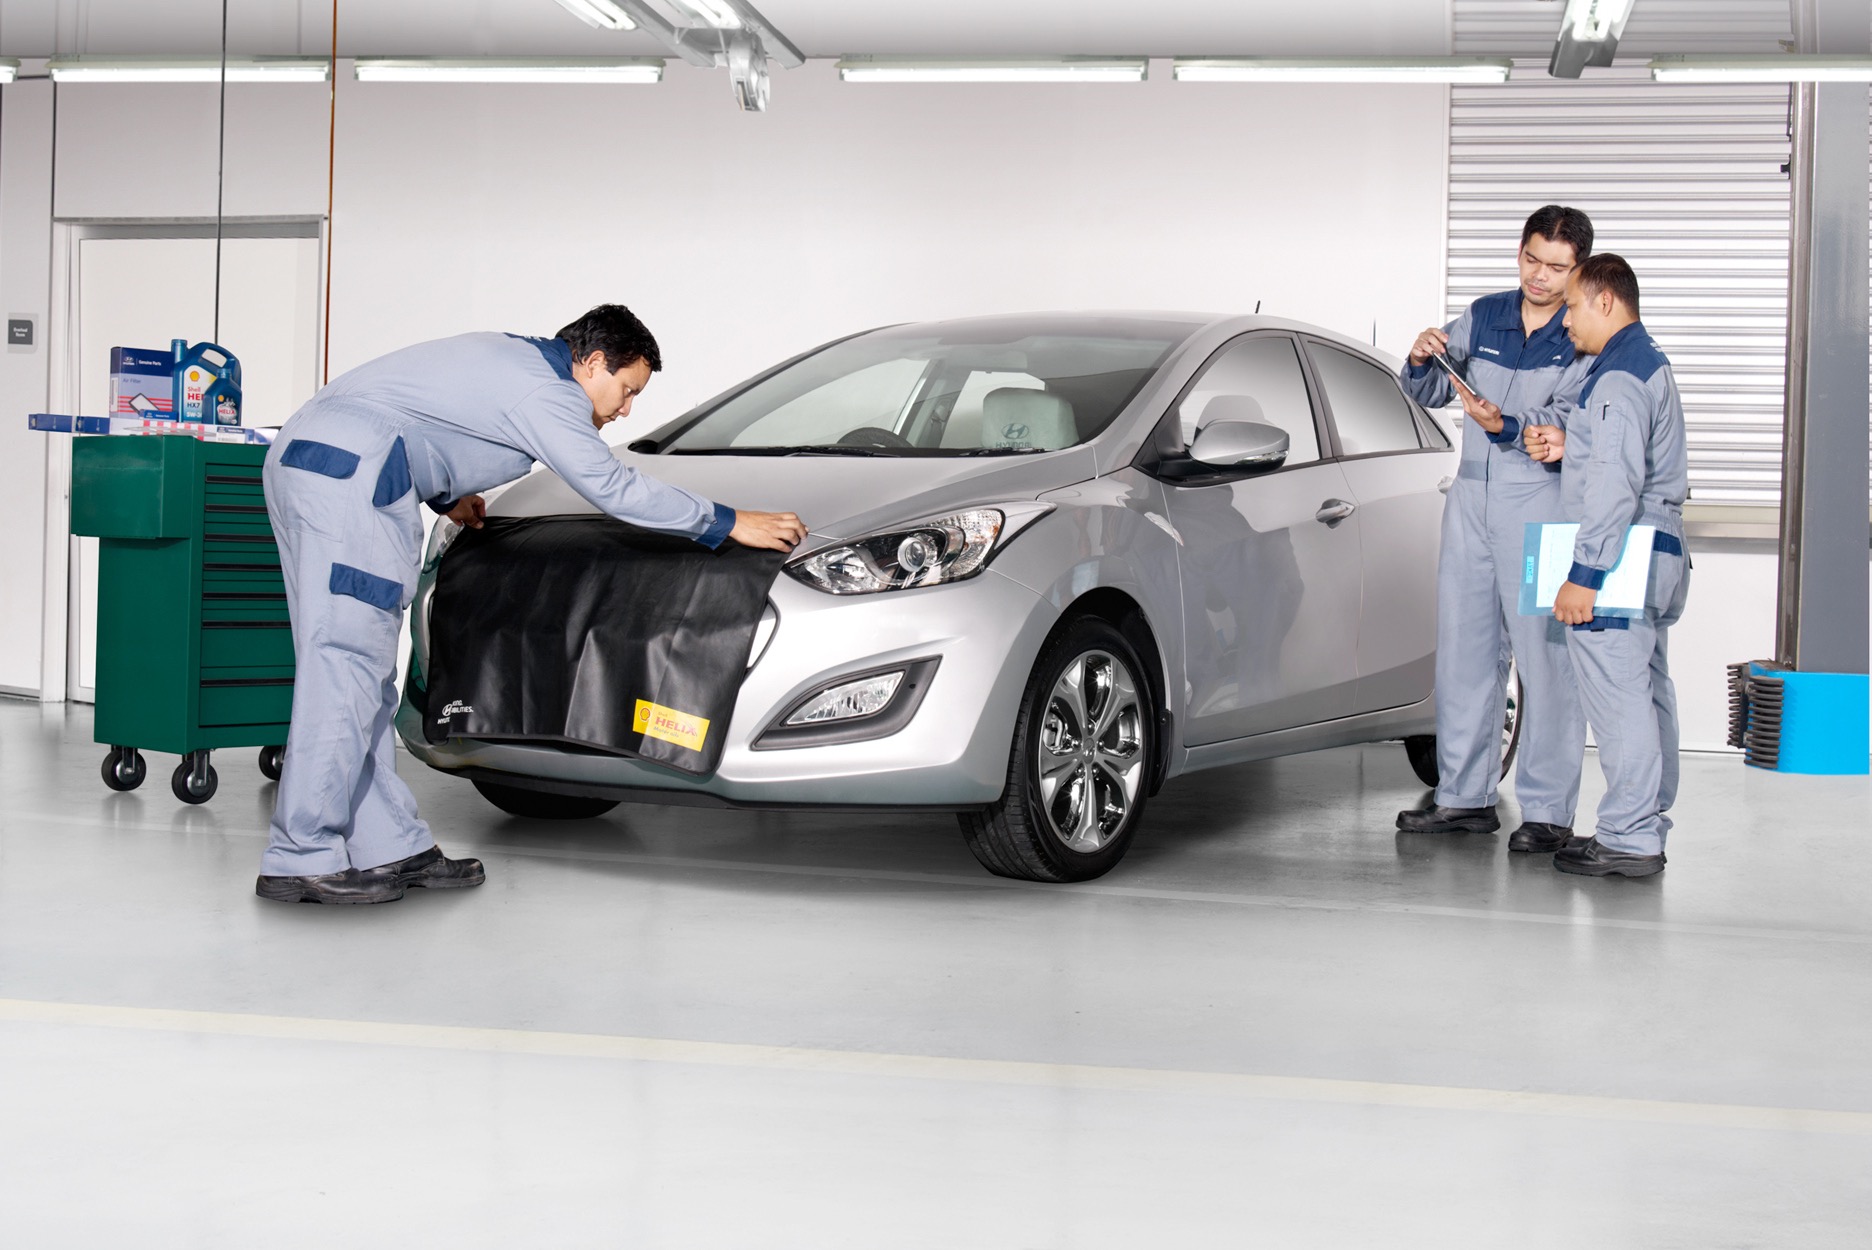 Hyundai 2018 Nisan Servis Bakım Kampanyası ve Servis Paket Ücretleri